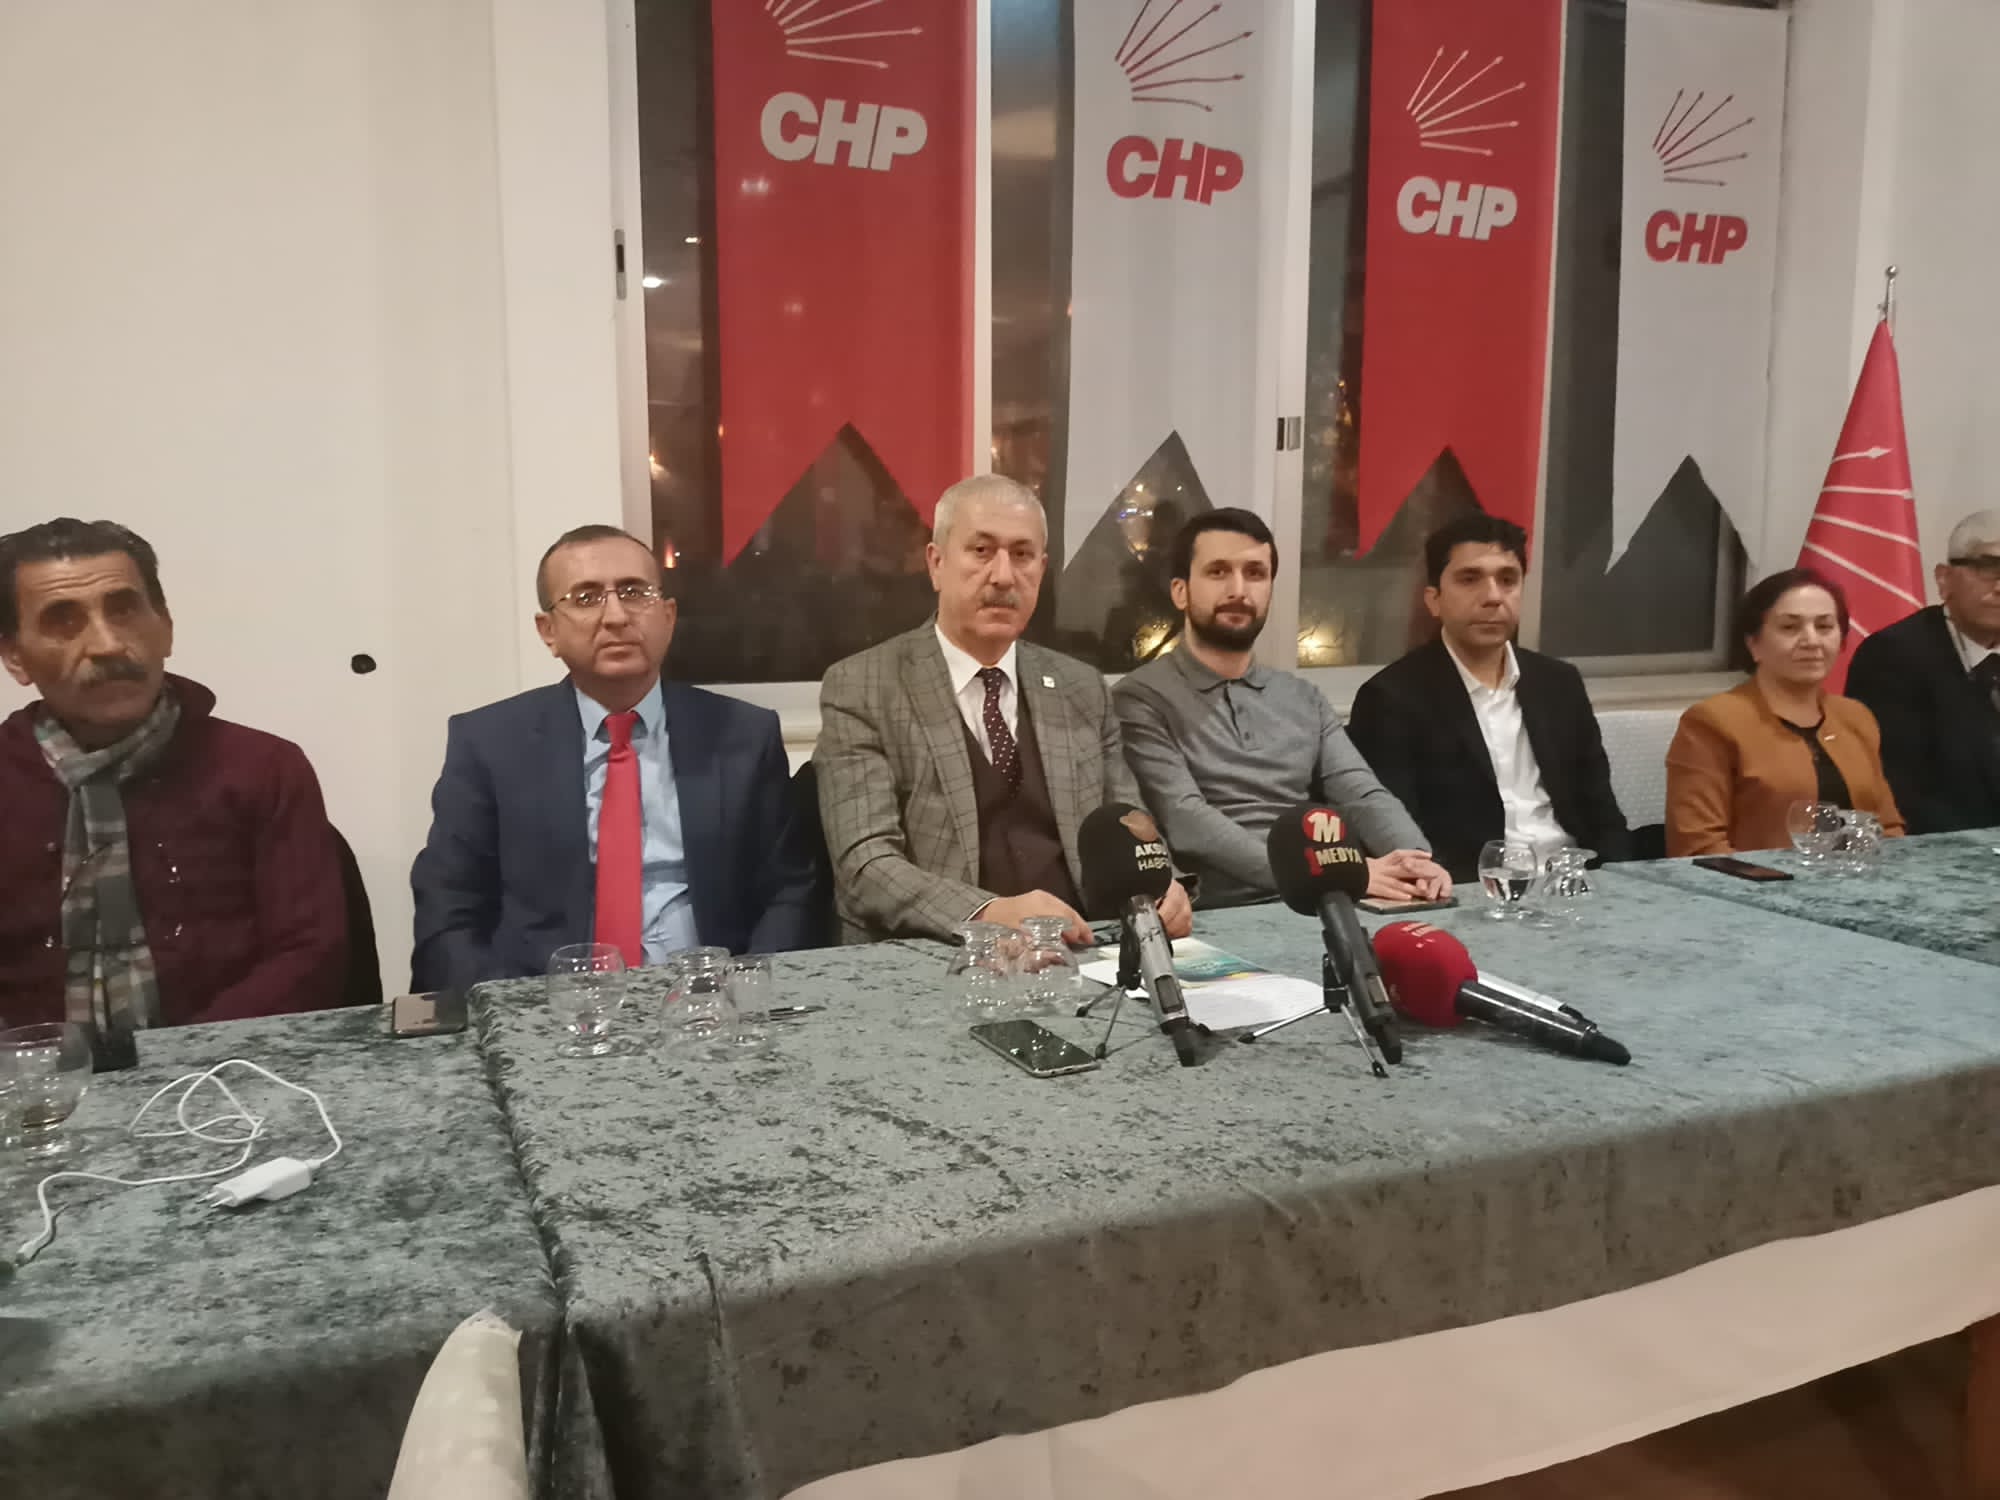 CHP’li Başkan Şengül, “Basın demokrasinin mihenk taşıdır